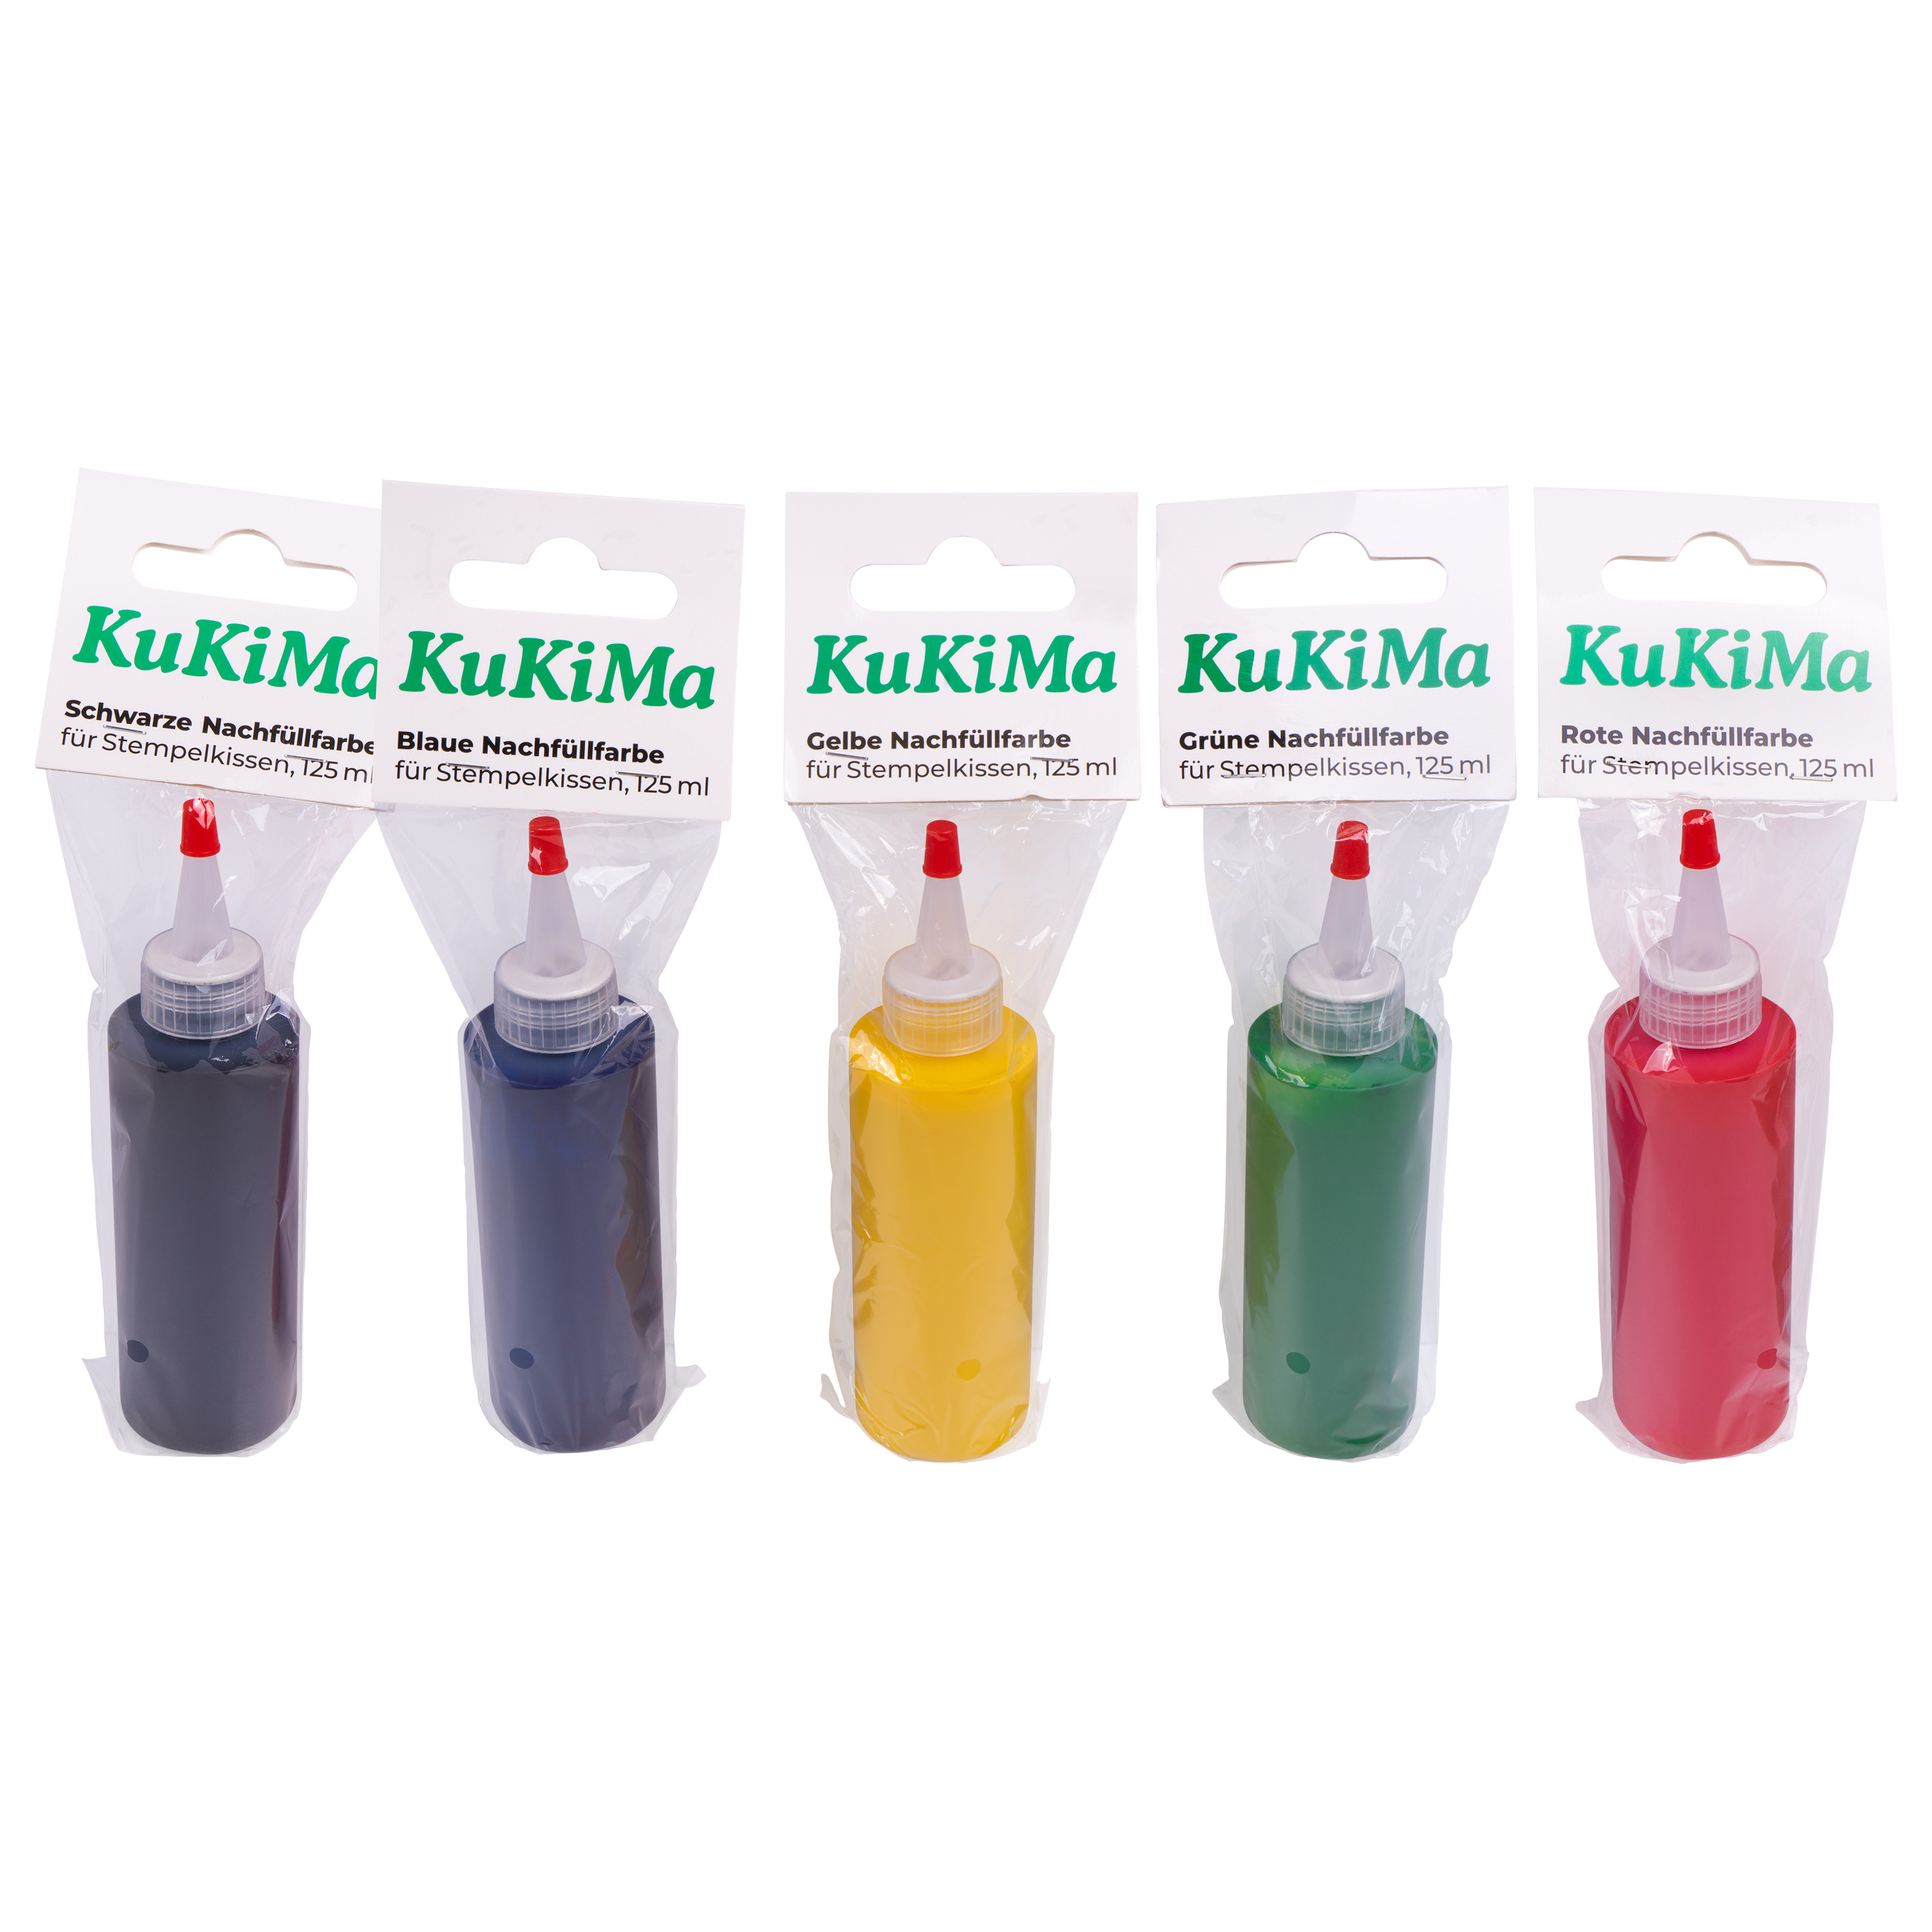 KuKiMa Schwarze Nachfüllfarbe für Stempelkissen, 125 ml